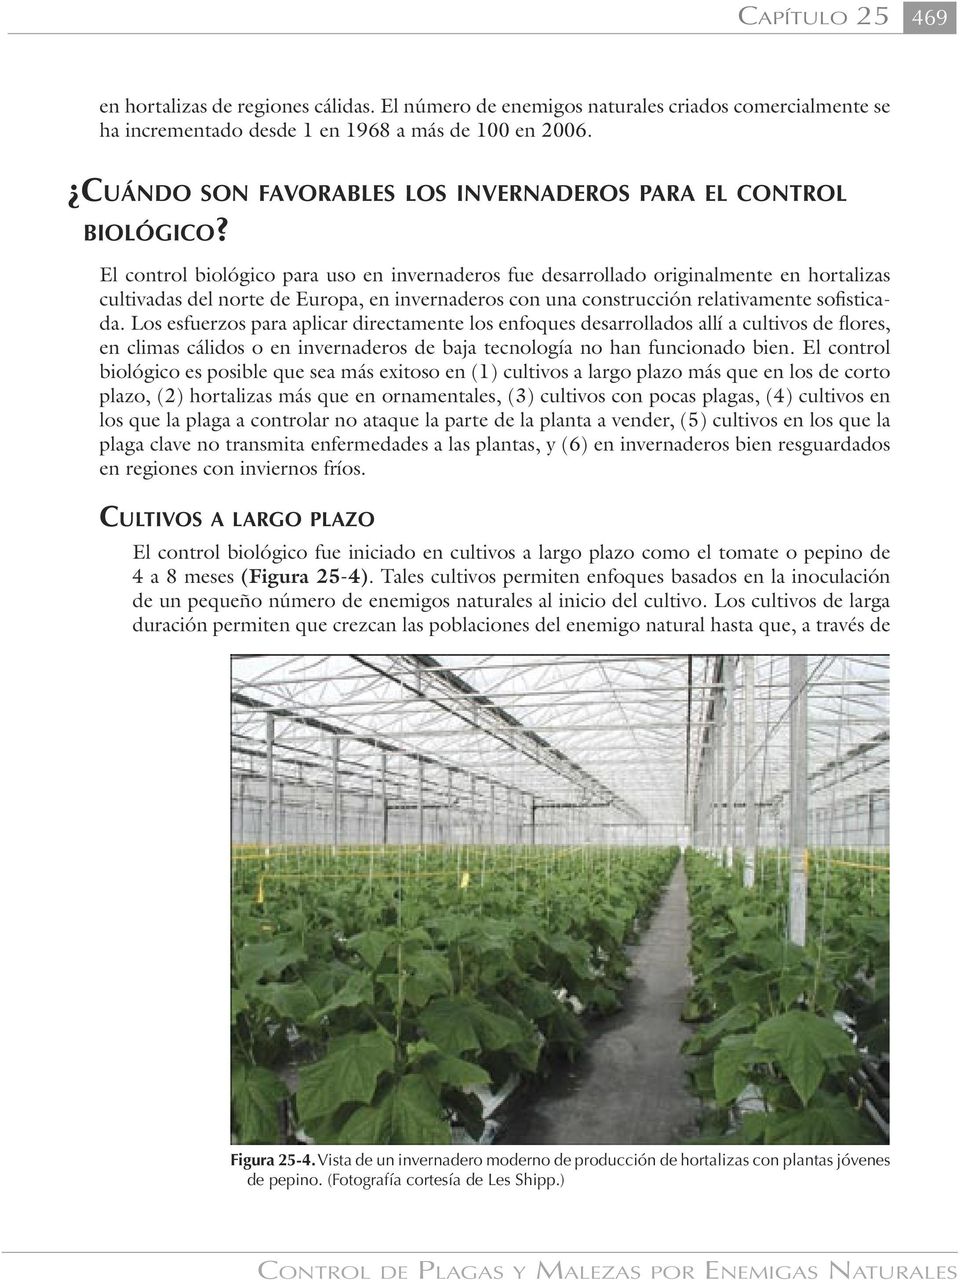 El control biológico para uso en invernaderos fue desarrollado originalmente en hortalizas cultivadas del norte de Europa, en invernaderos con una construcción relativamente sofisticada.